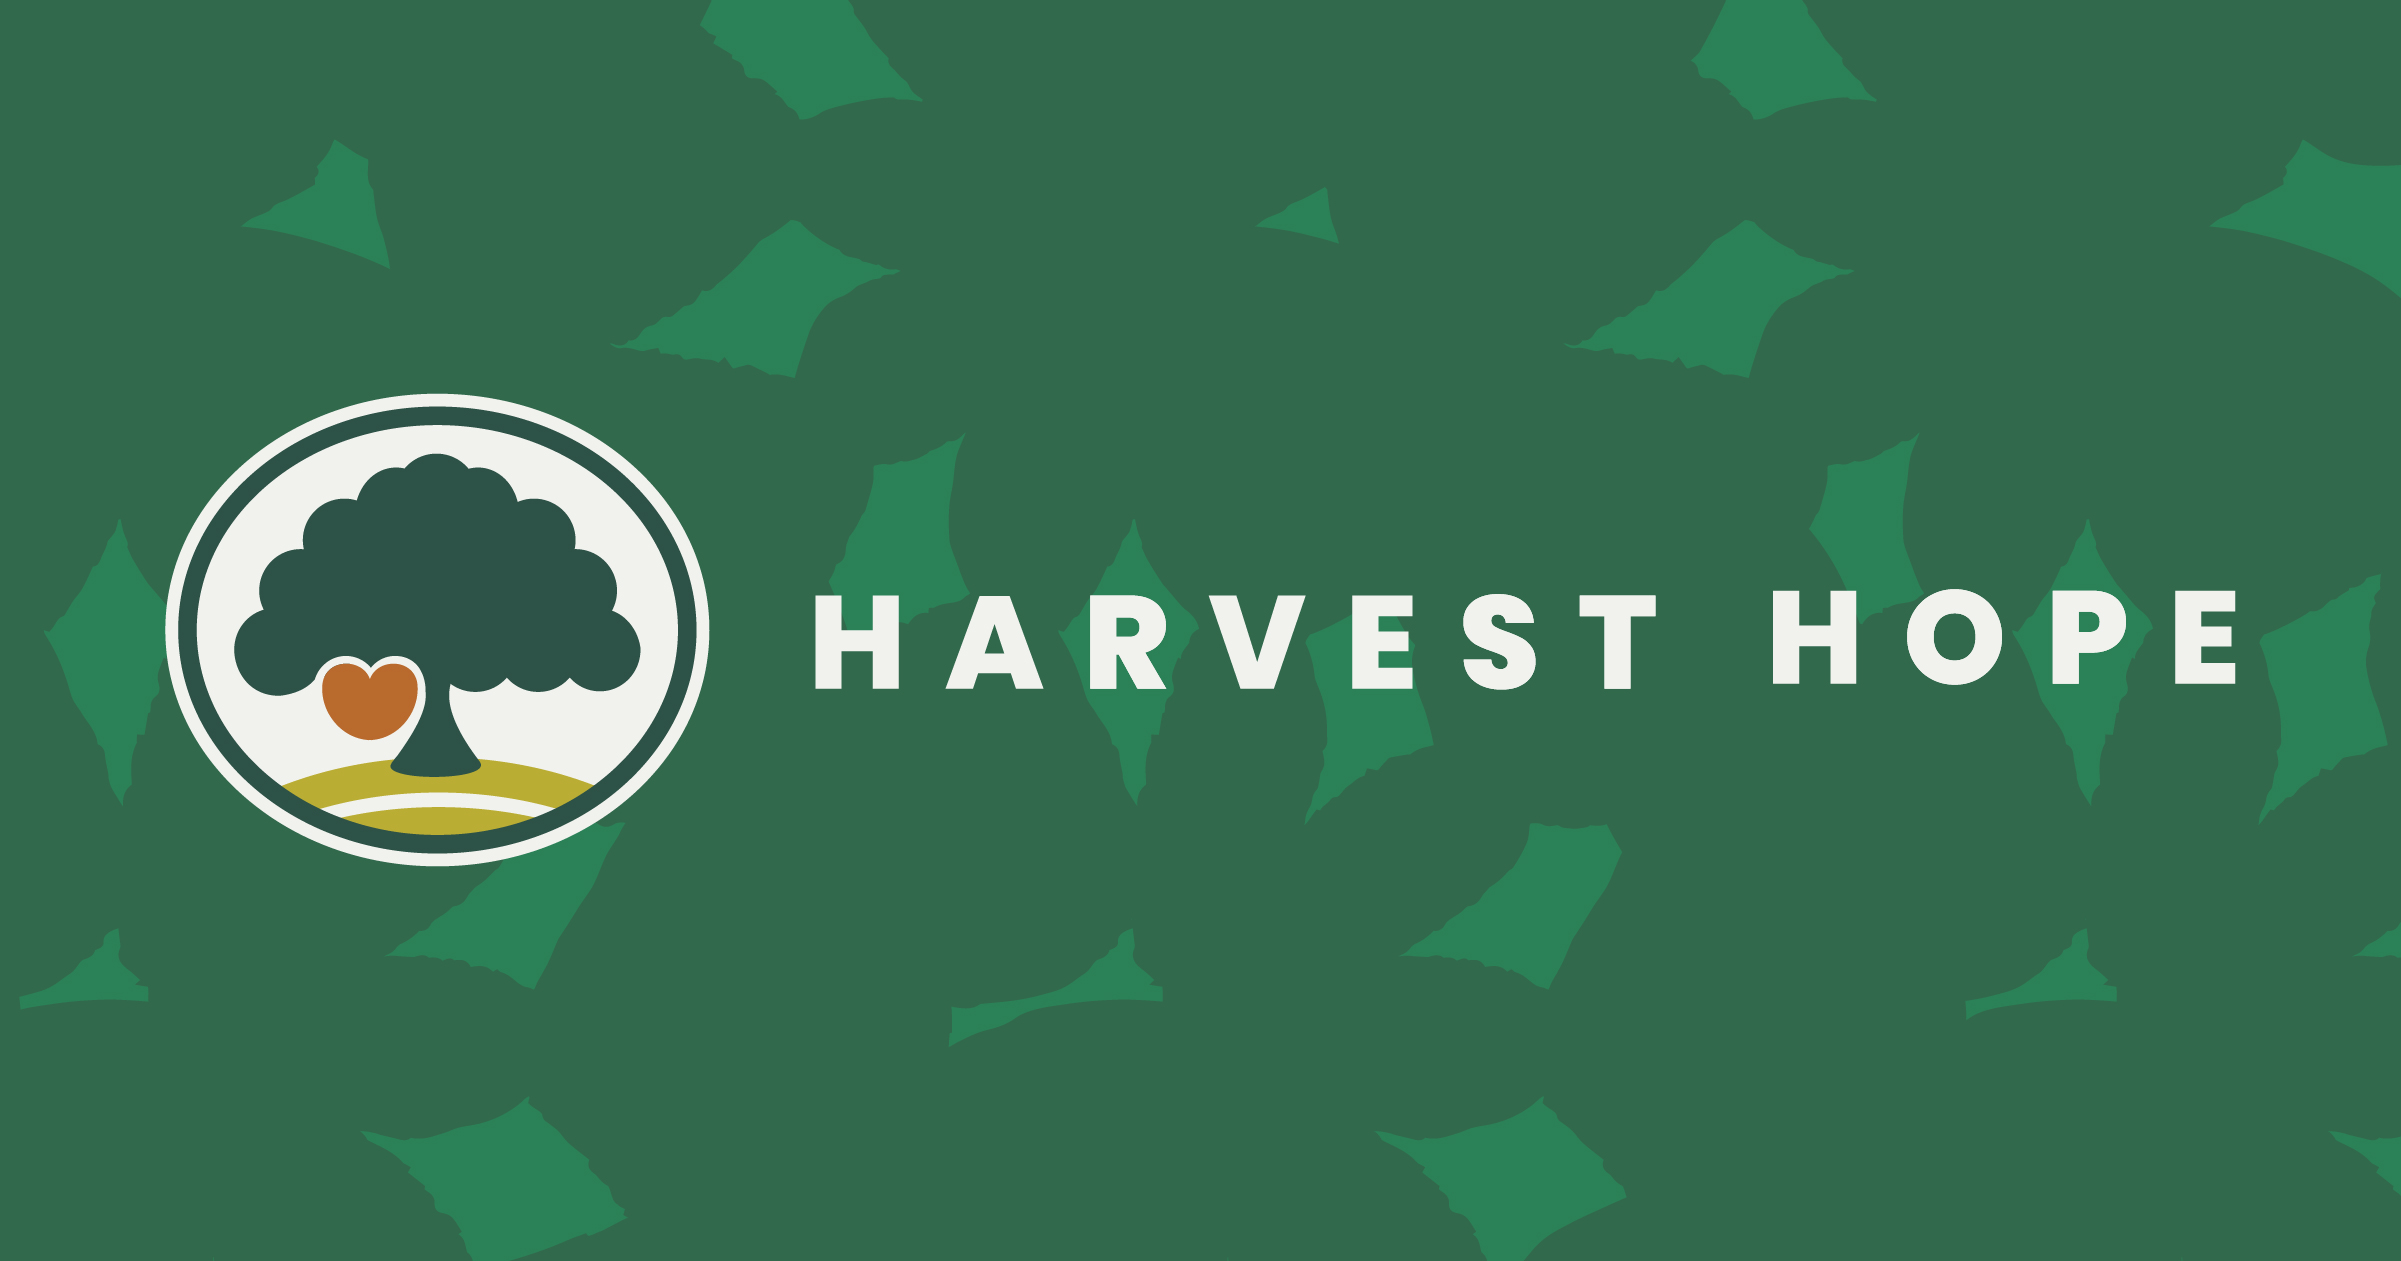 https://www.harvesthope.org/sites/default/files/og/Leaf%20Landscape%402x-100.jpg